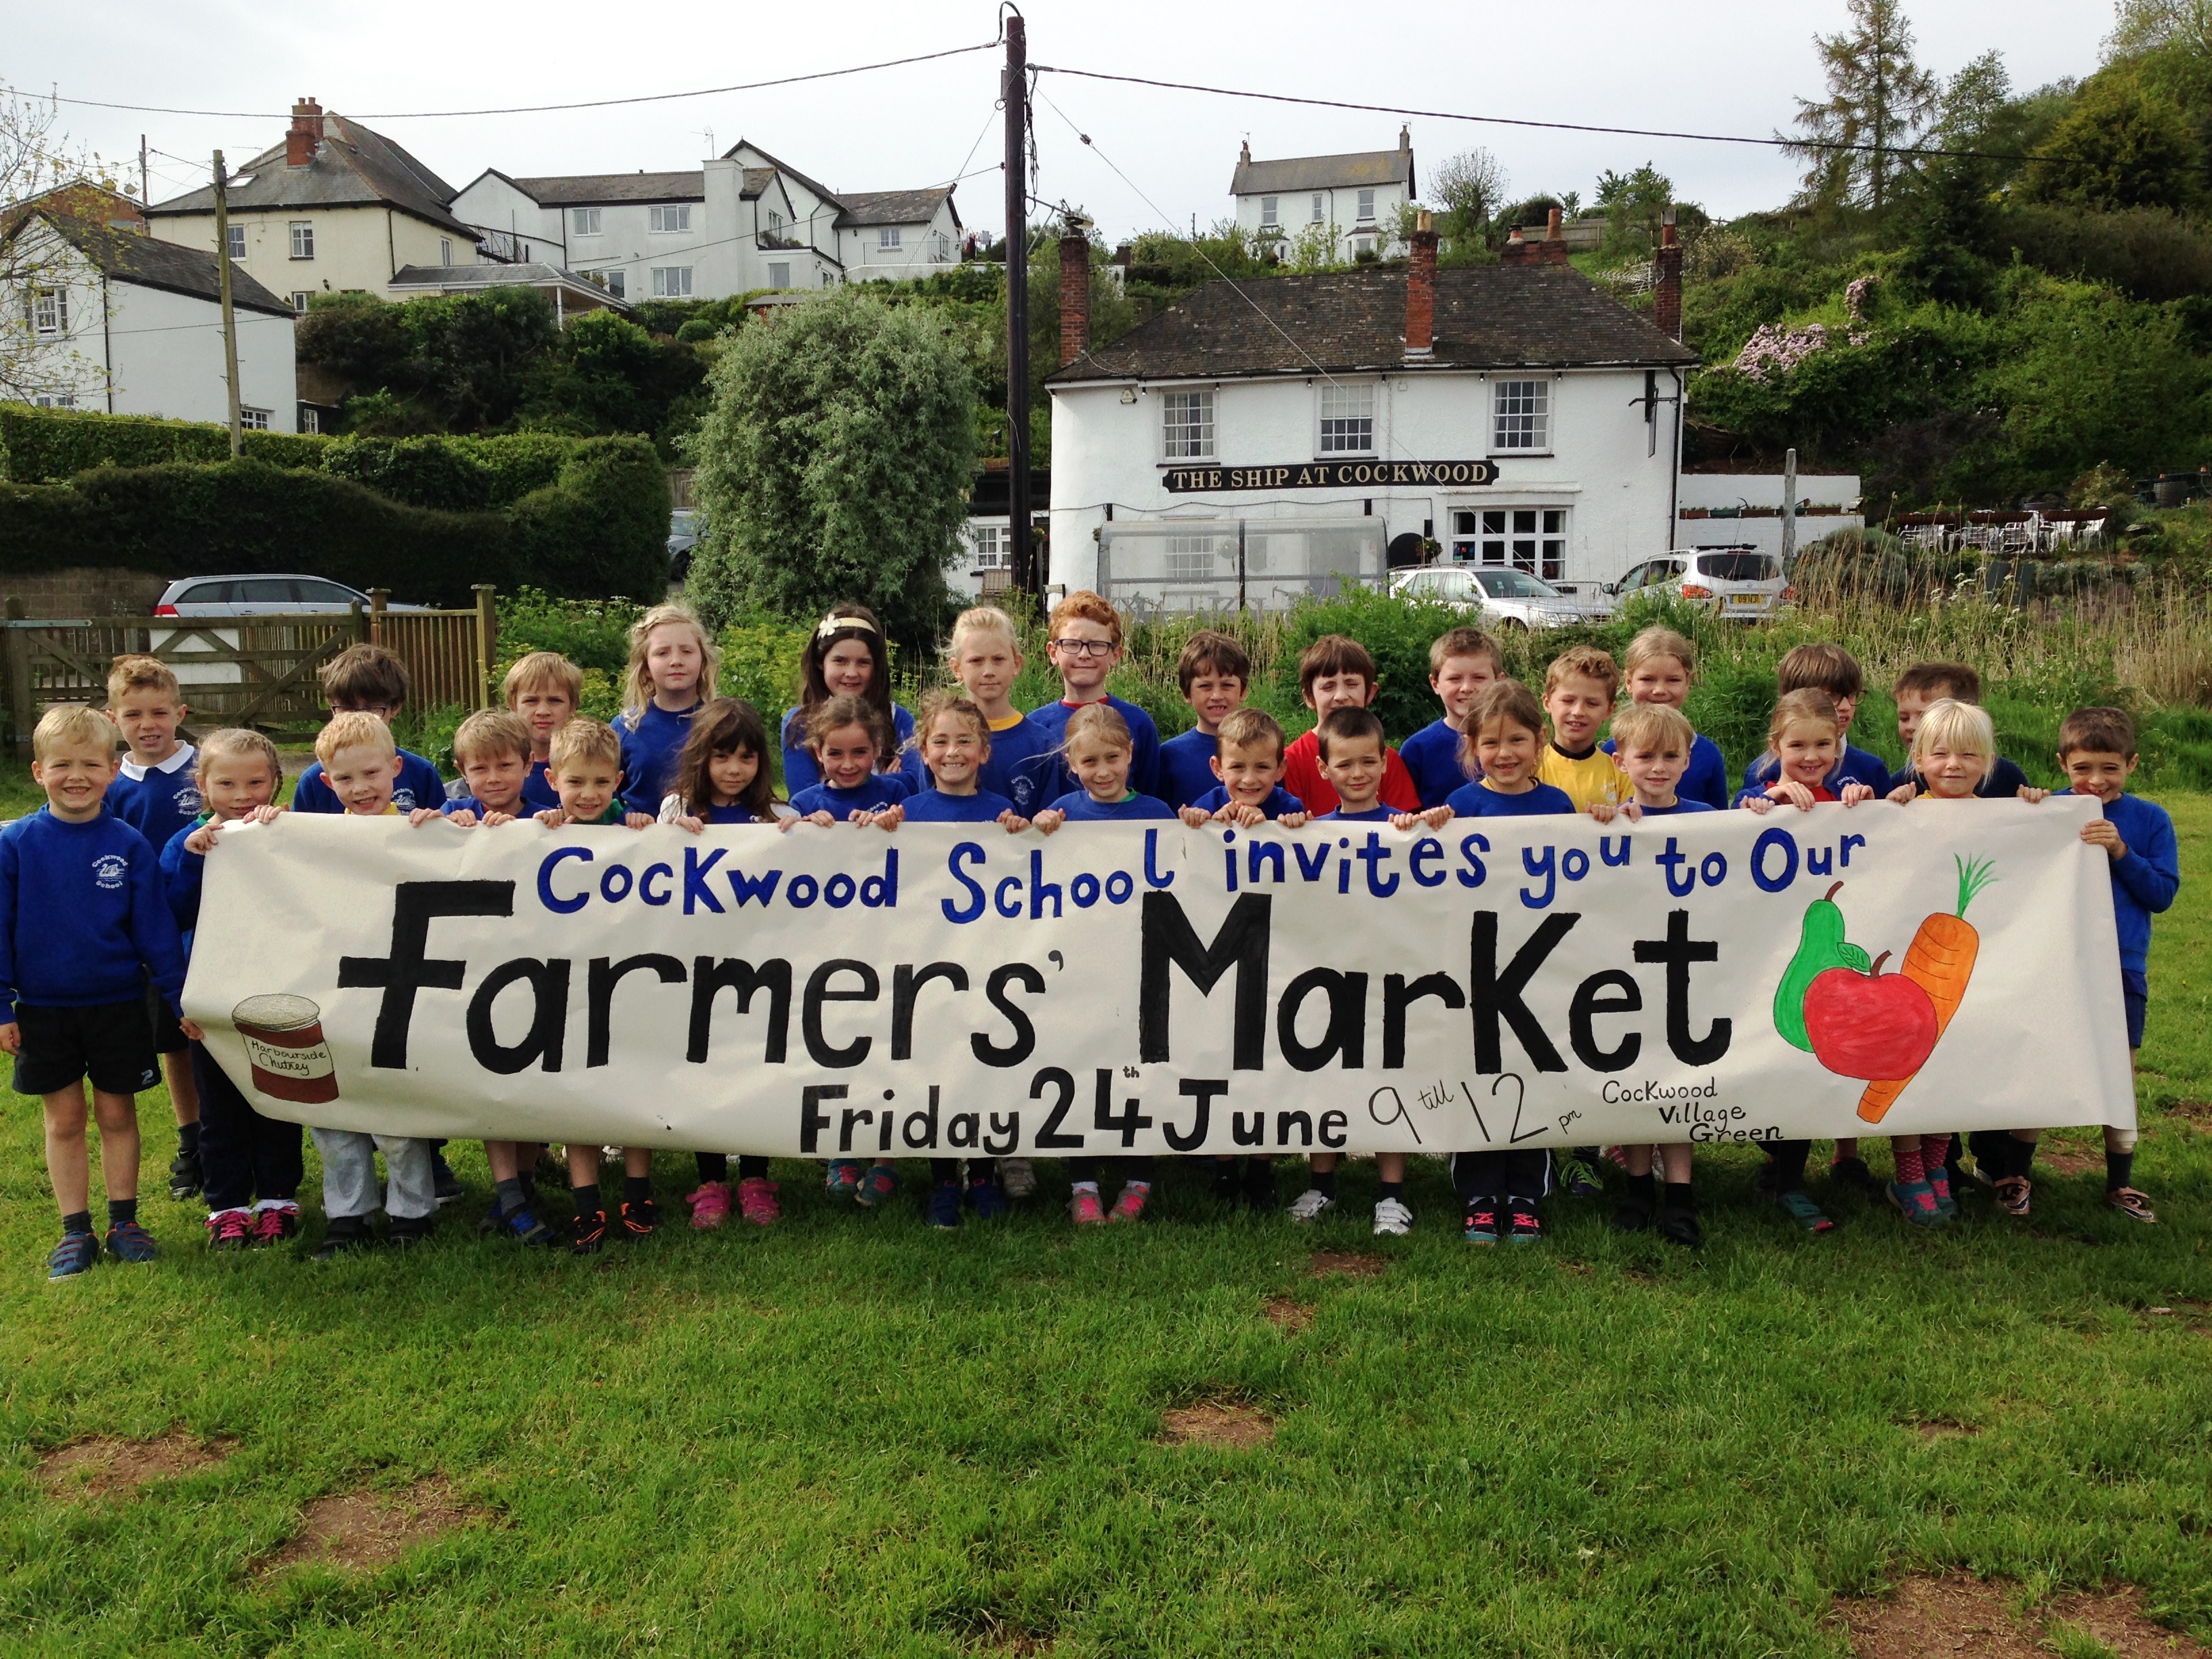 Cockwood School Farmers Market